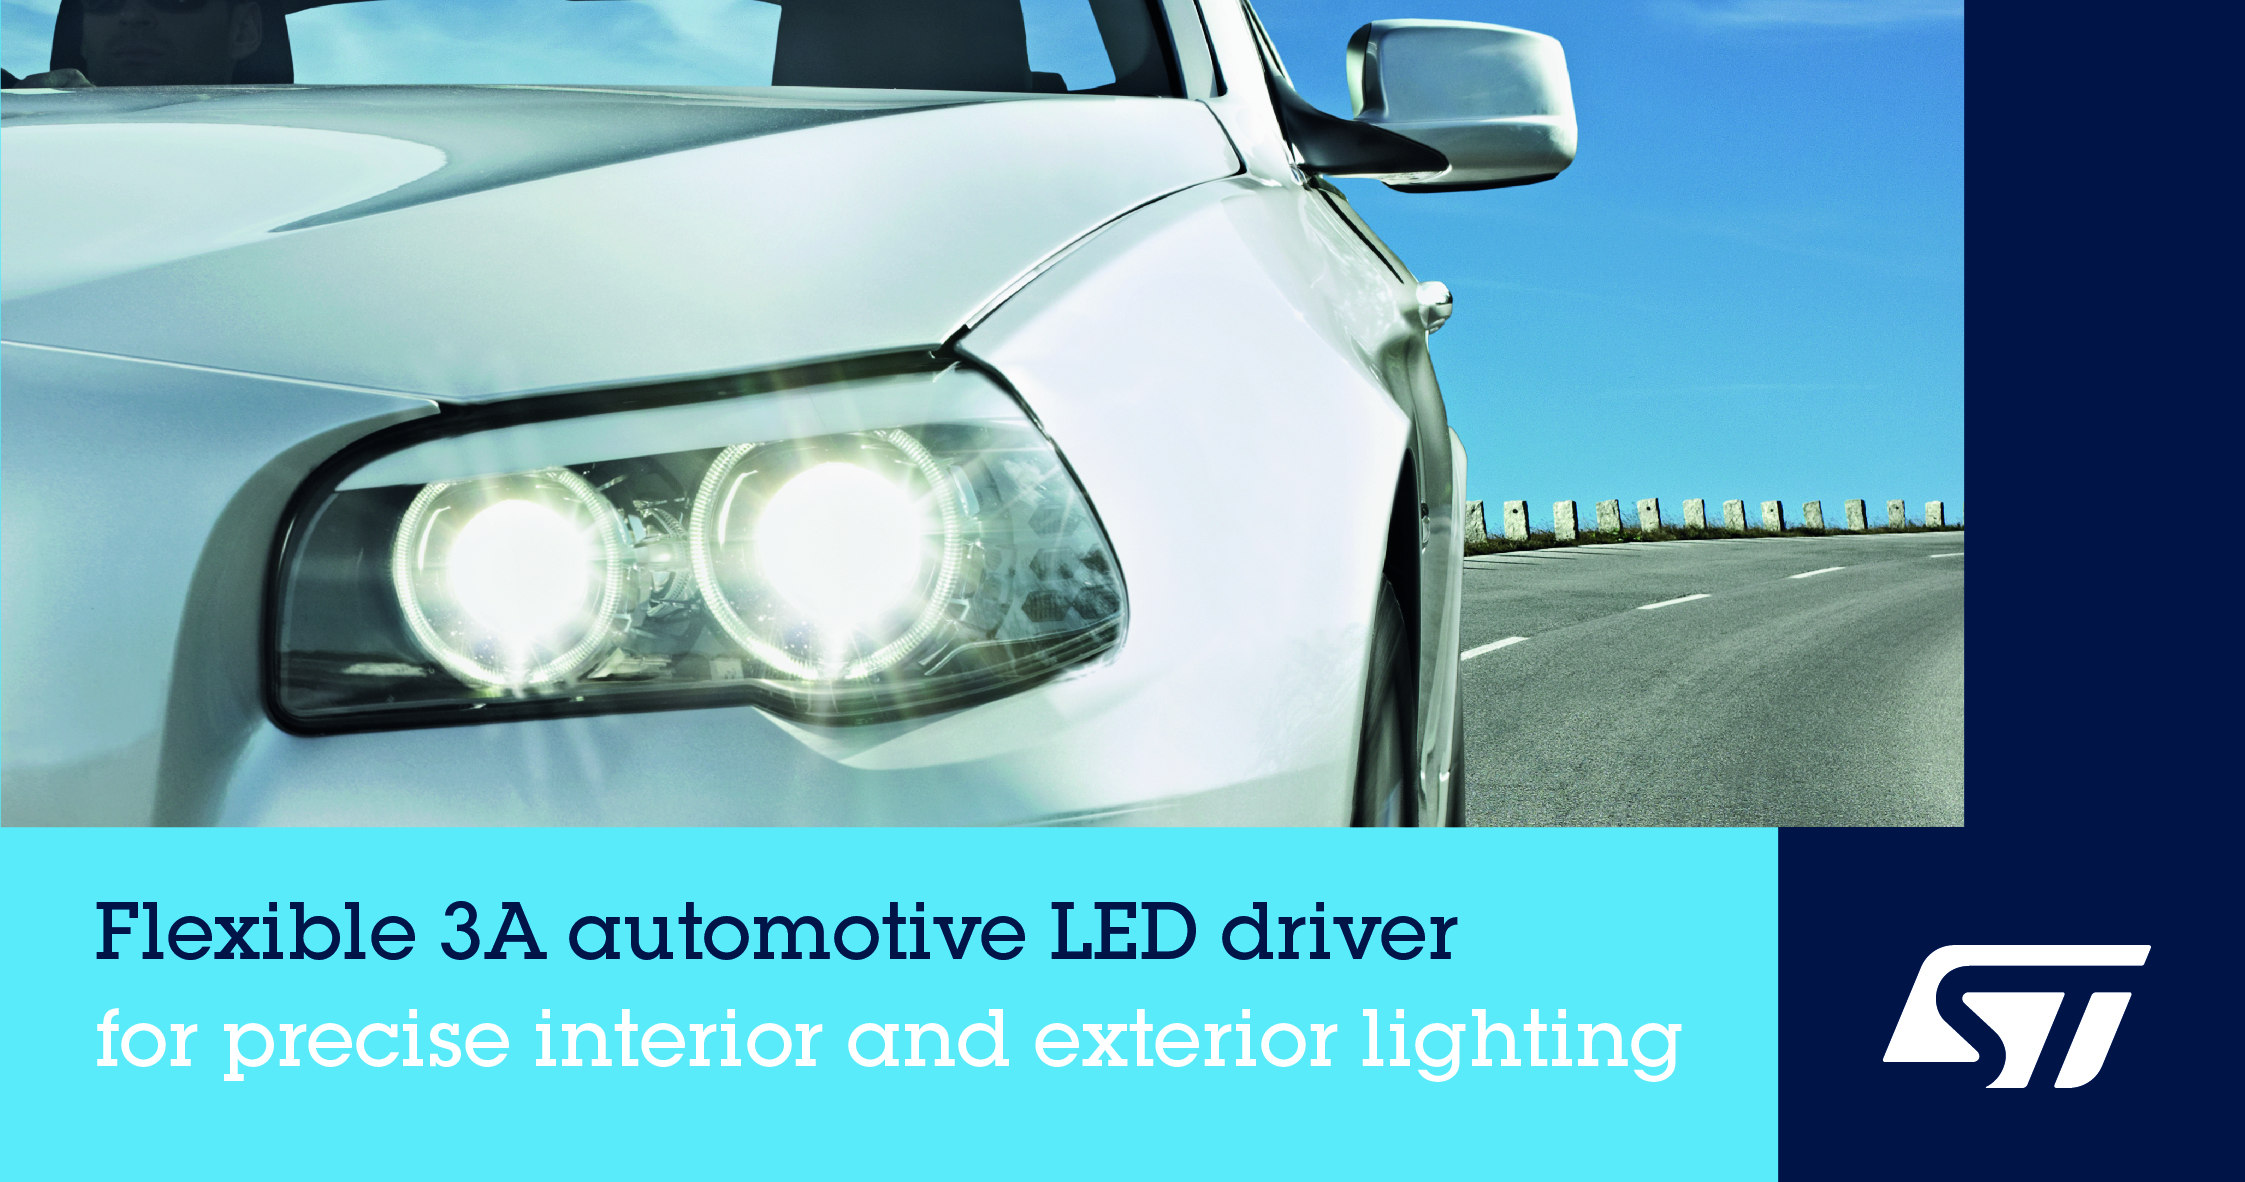 意法半导体发布高集成度、设计灵活的车规LED驱动器